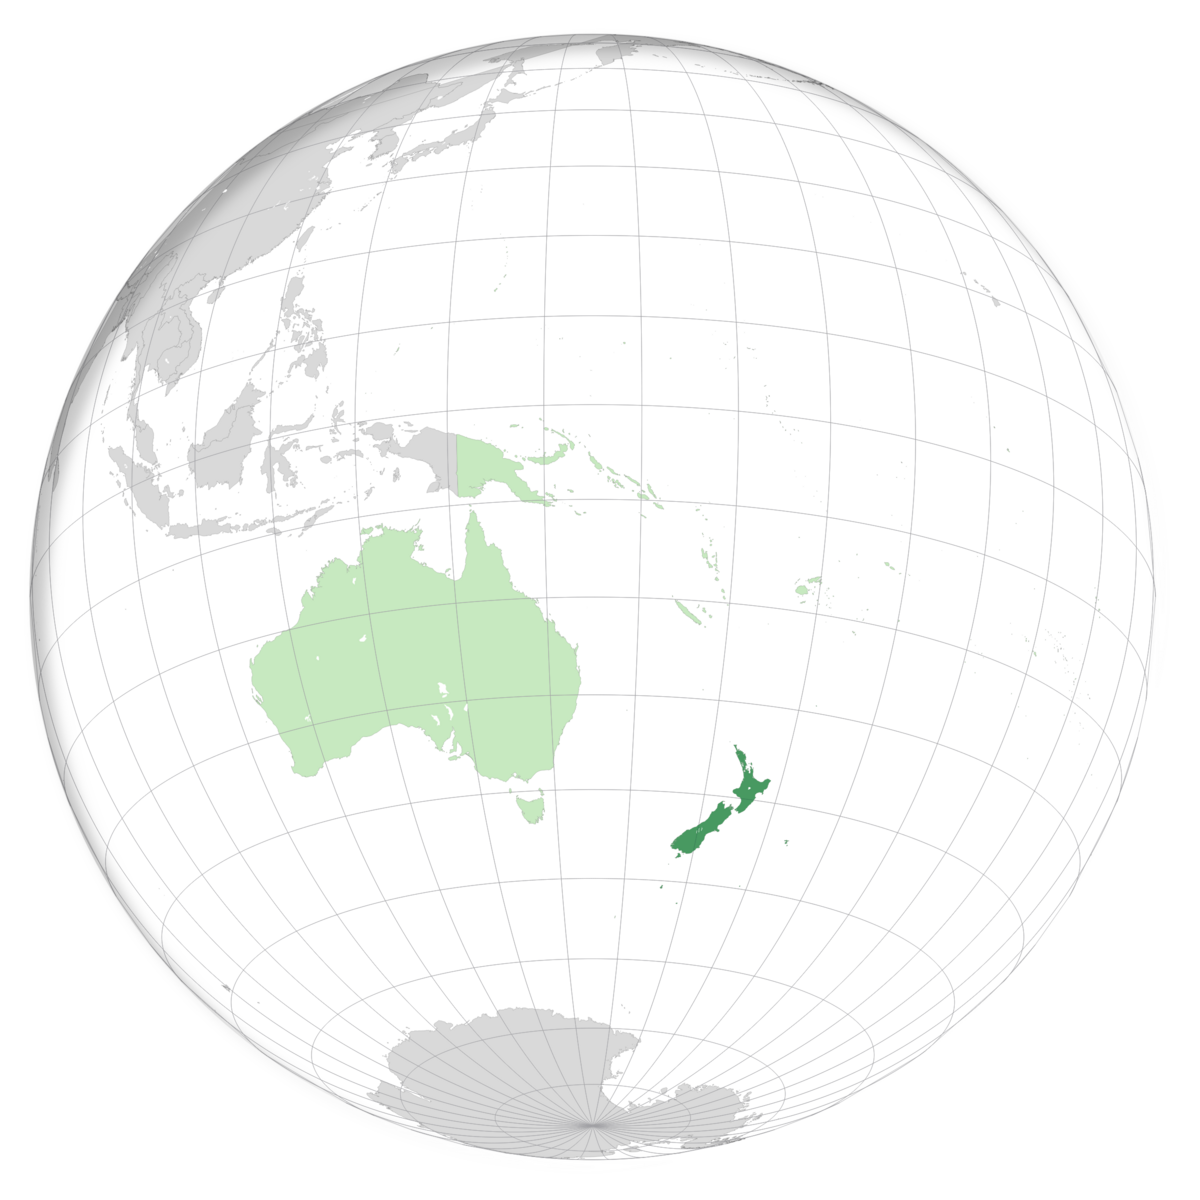 plassering av New Zealand på jordkloden. Kart